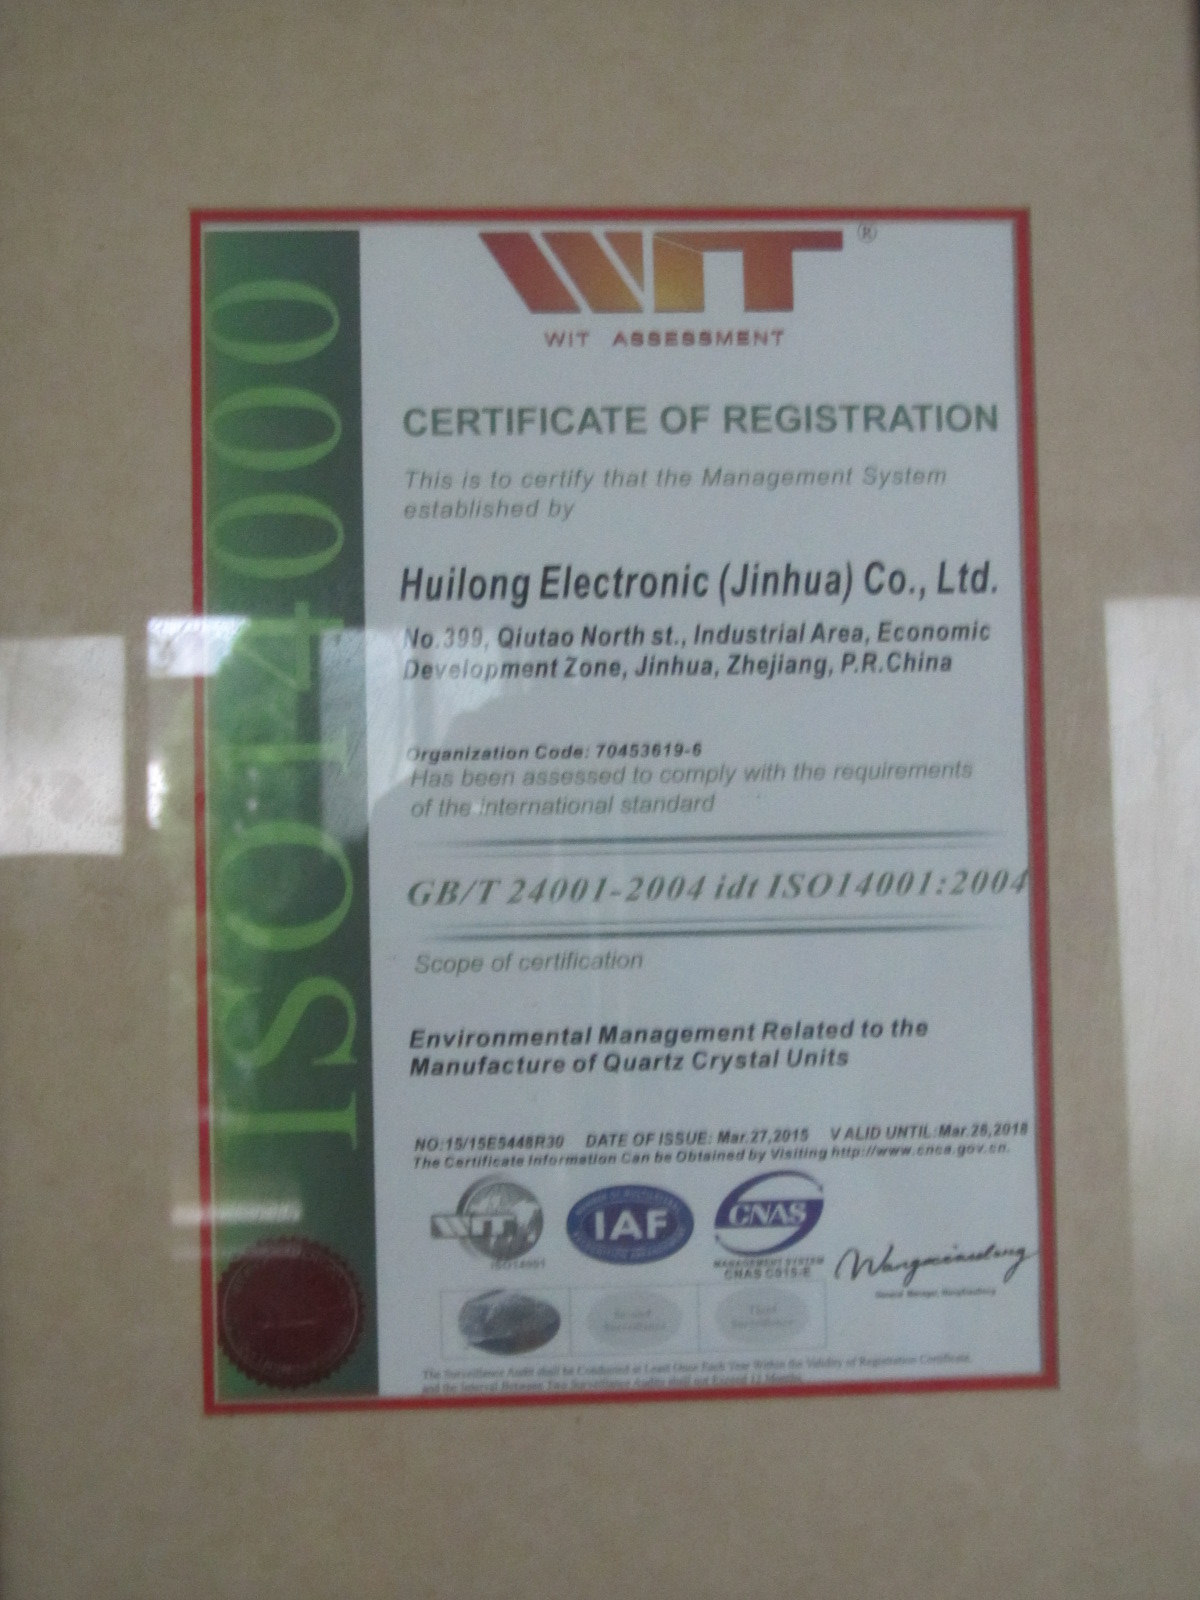 GB/T 24001-2004 idt ISO14001:2004證書